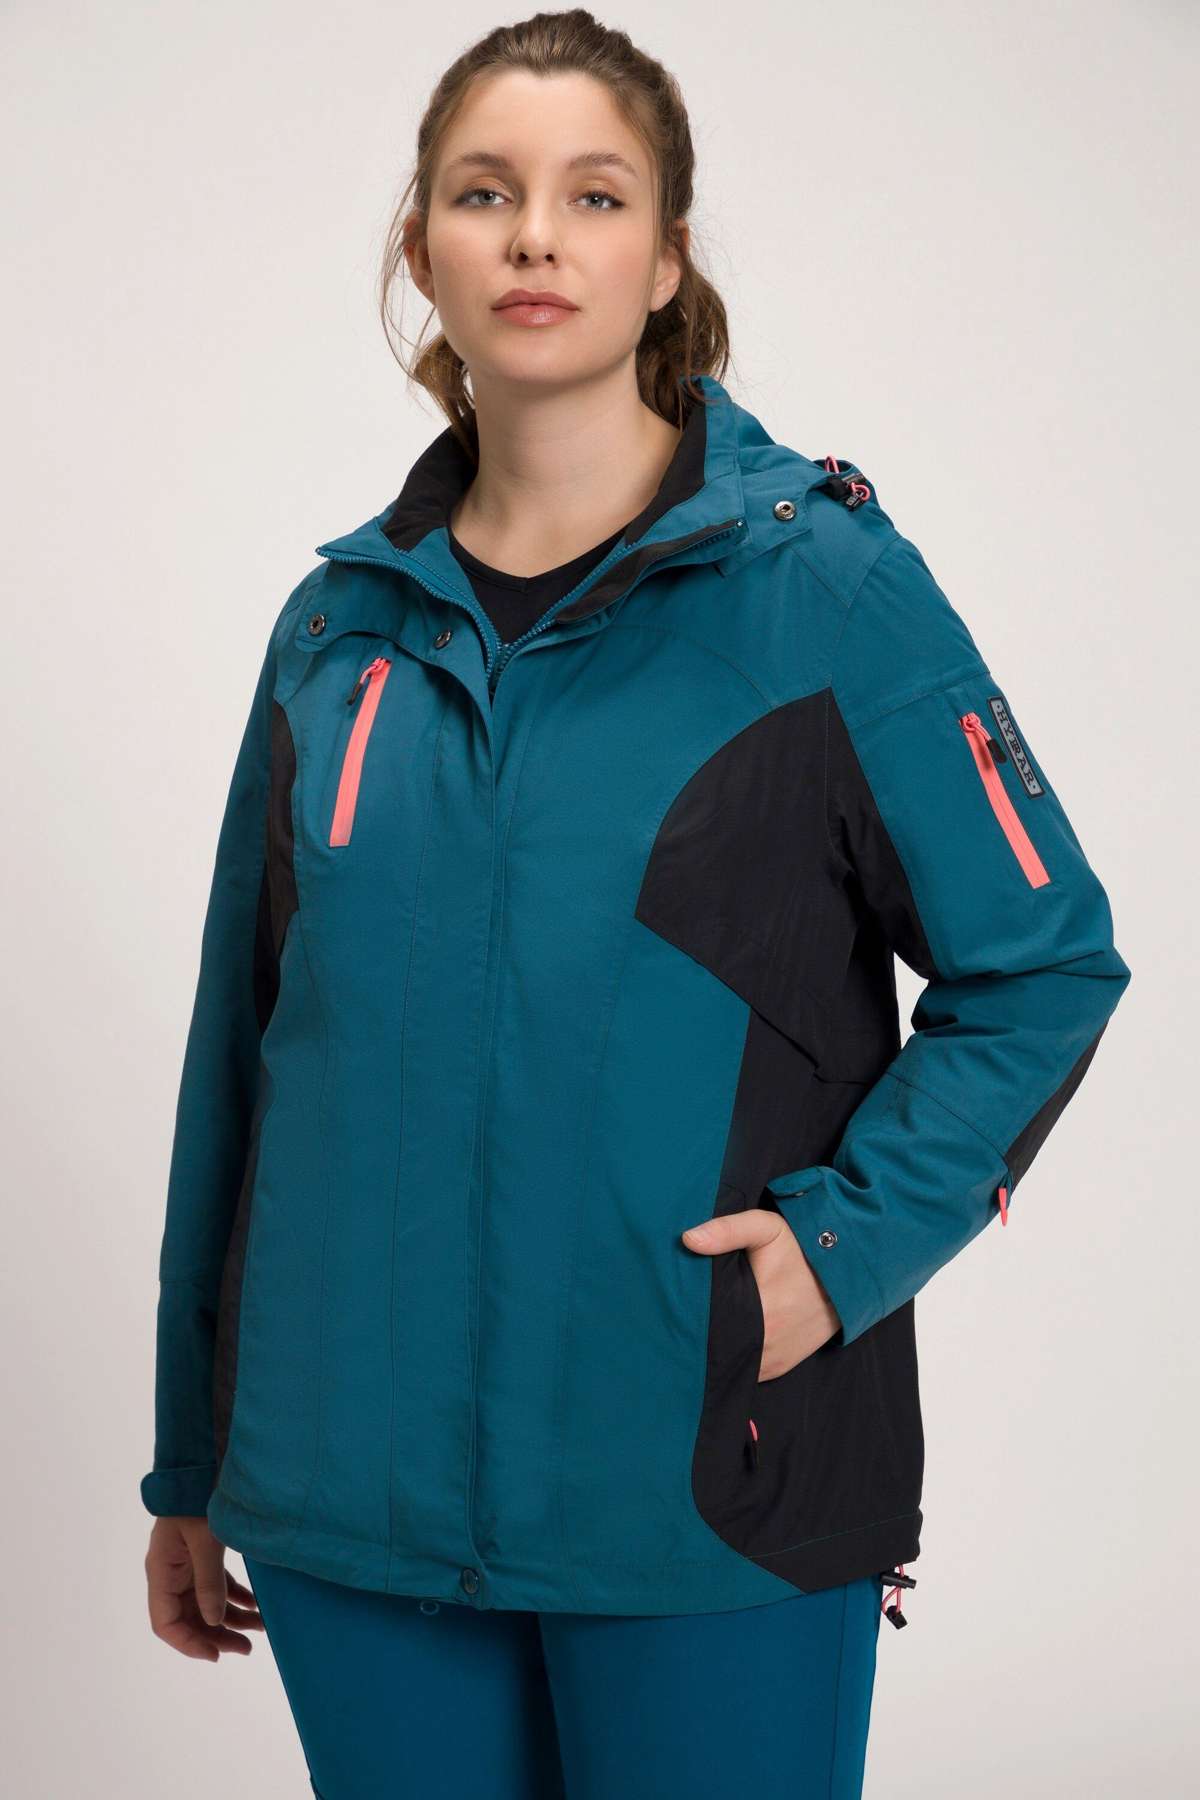 Функциональная куртка Модульная куртка HYPRAR, водонепроницаемая, двусторонняя молния